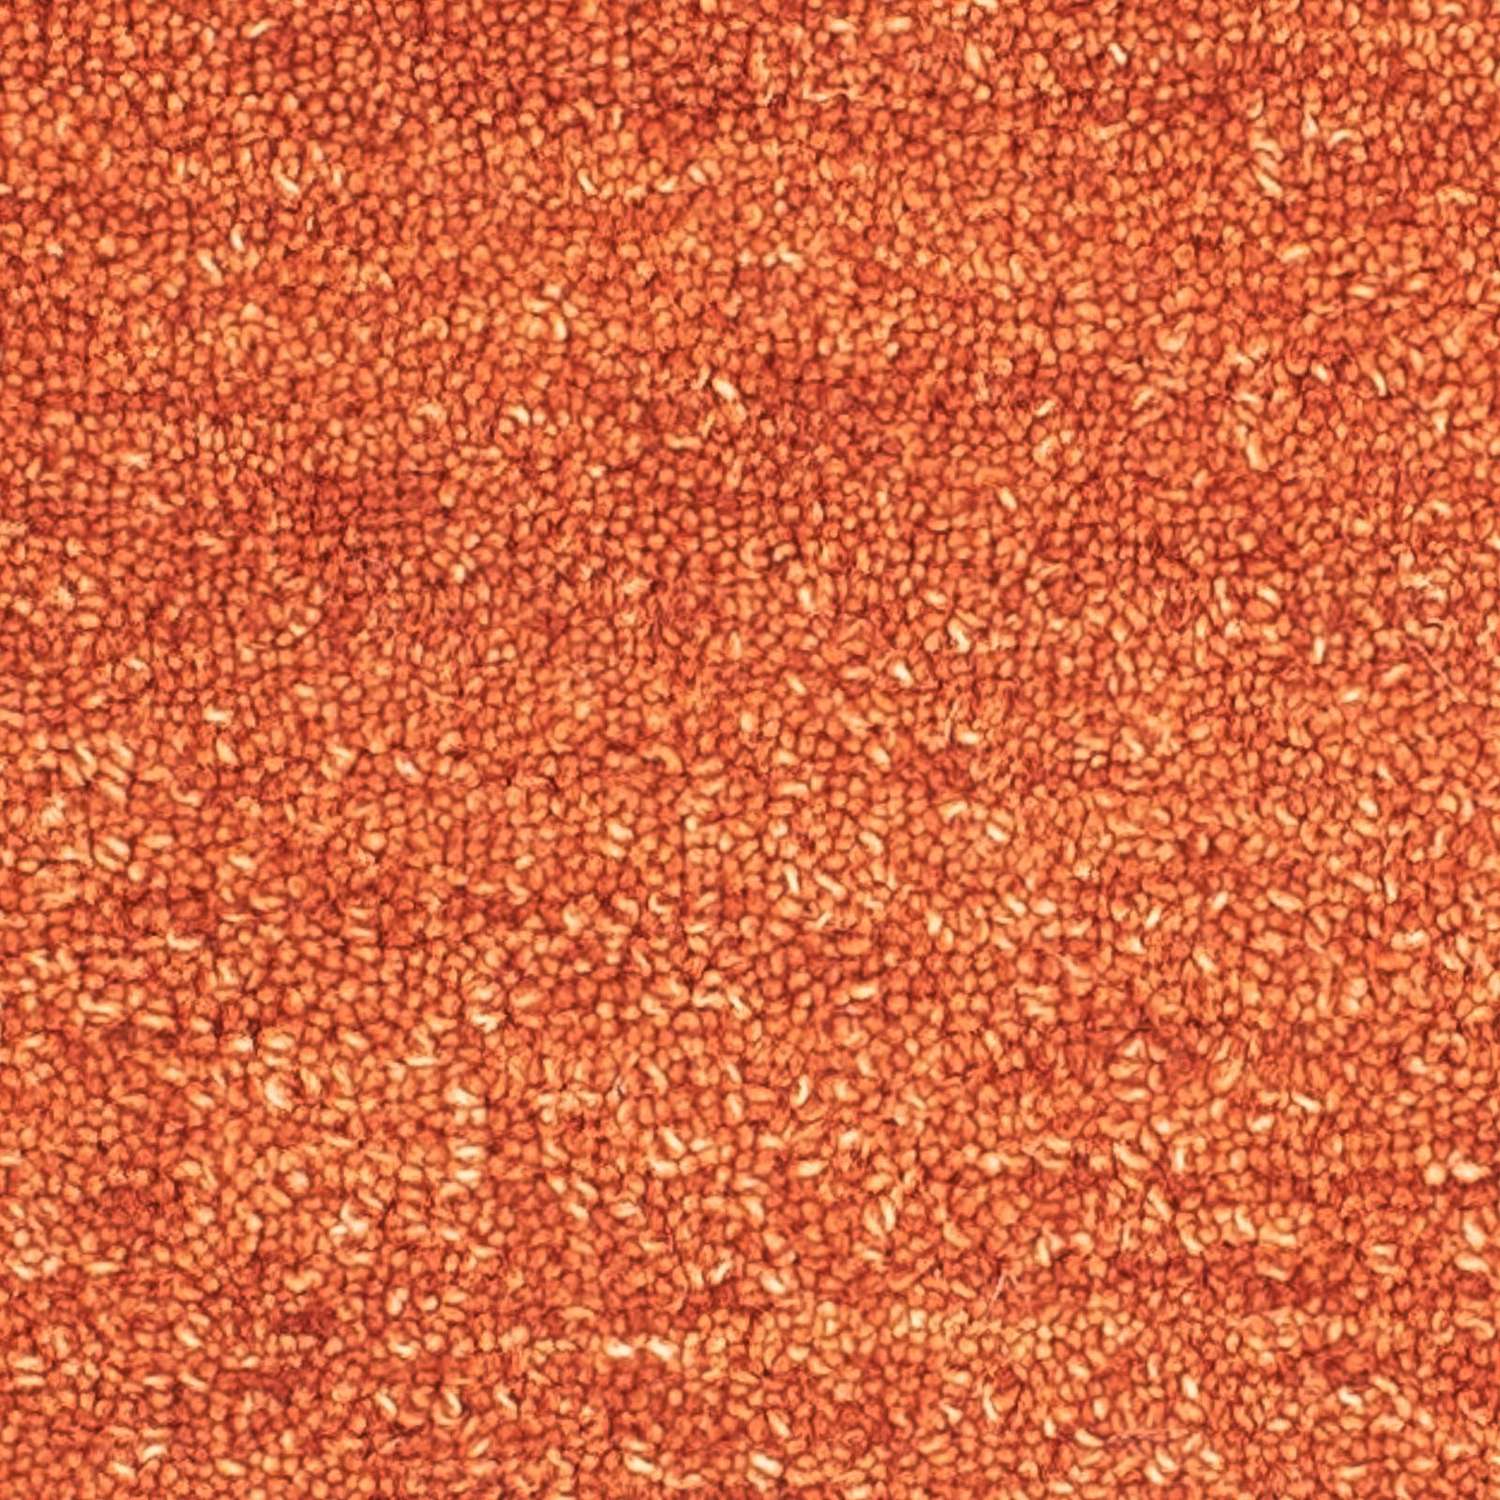 Dywan wełniany kwadratowy  - 47 x 47 cm - pomarańczowy